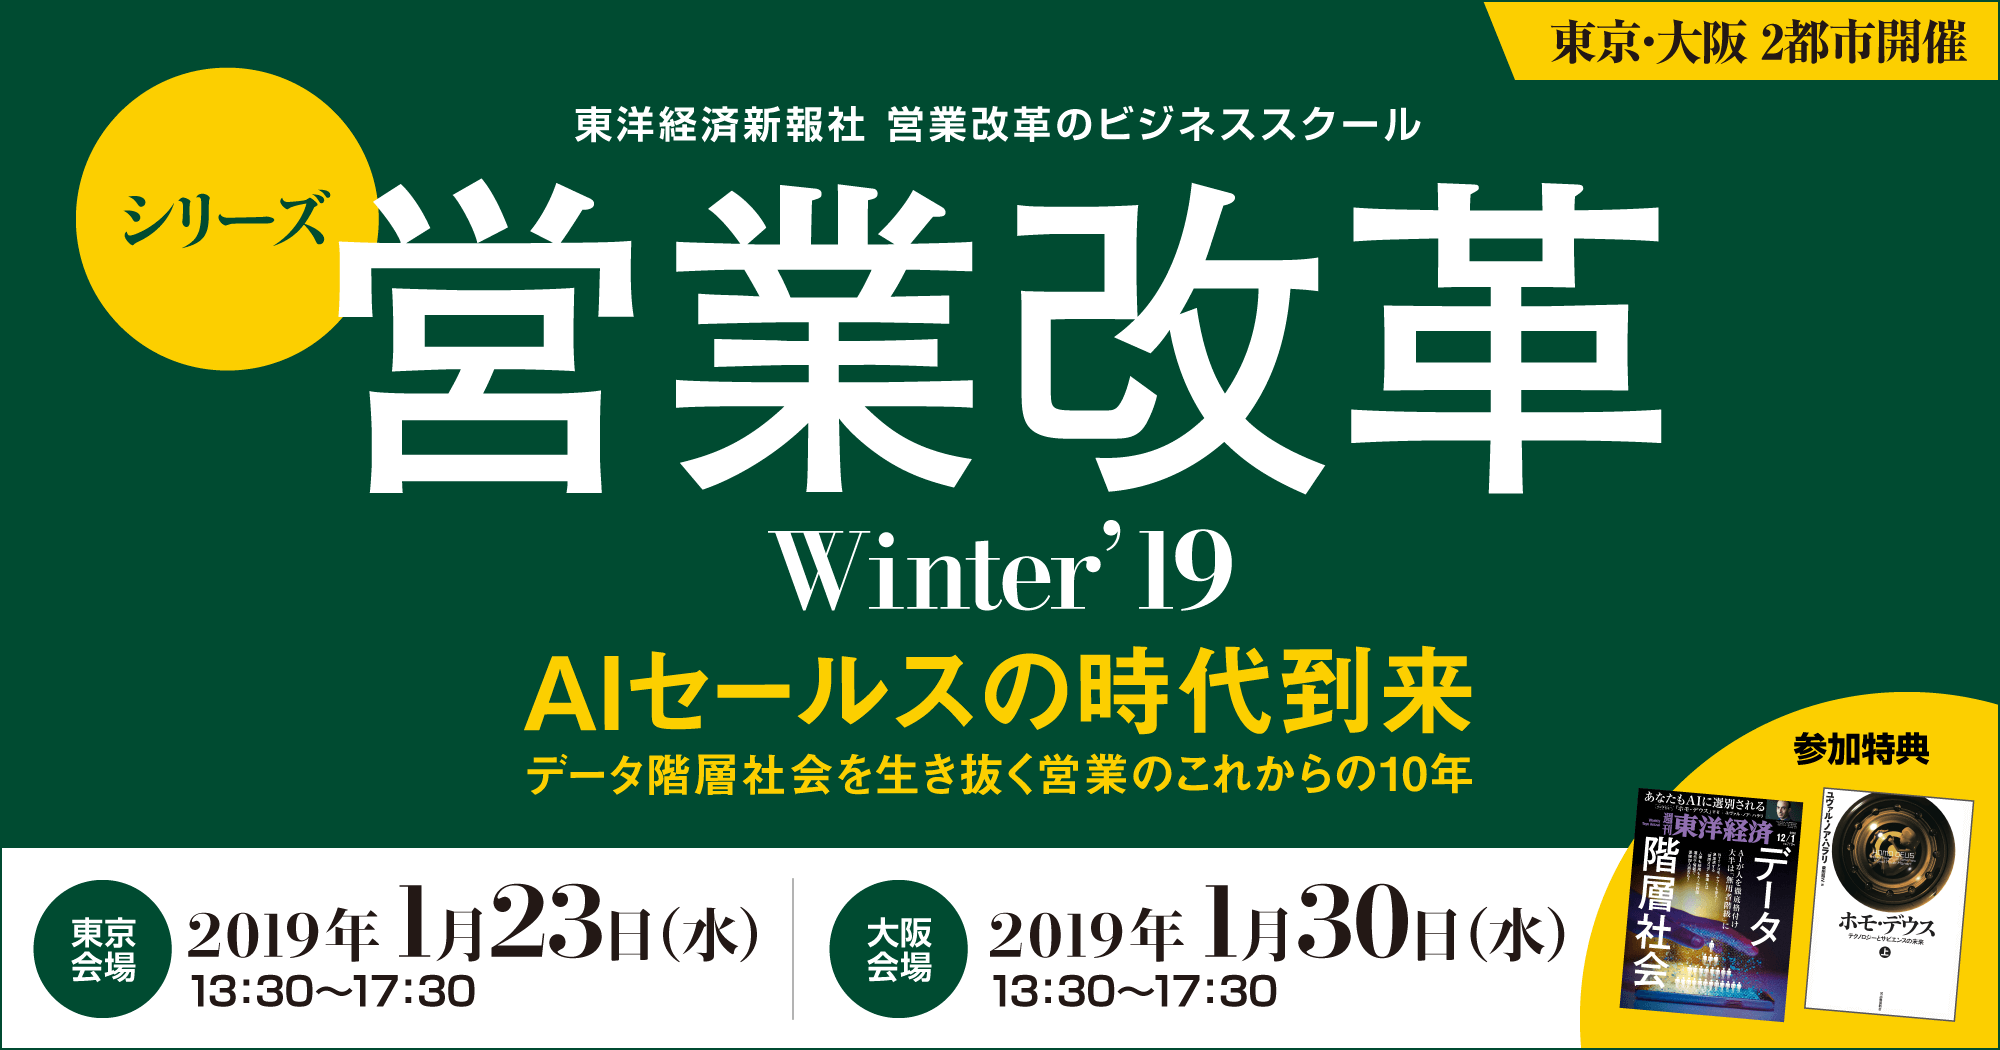 シリーズ営業改革 Winter’19【大阪会場】